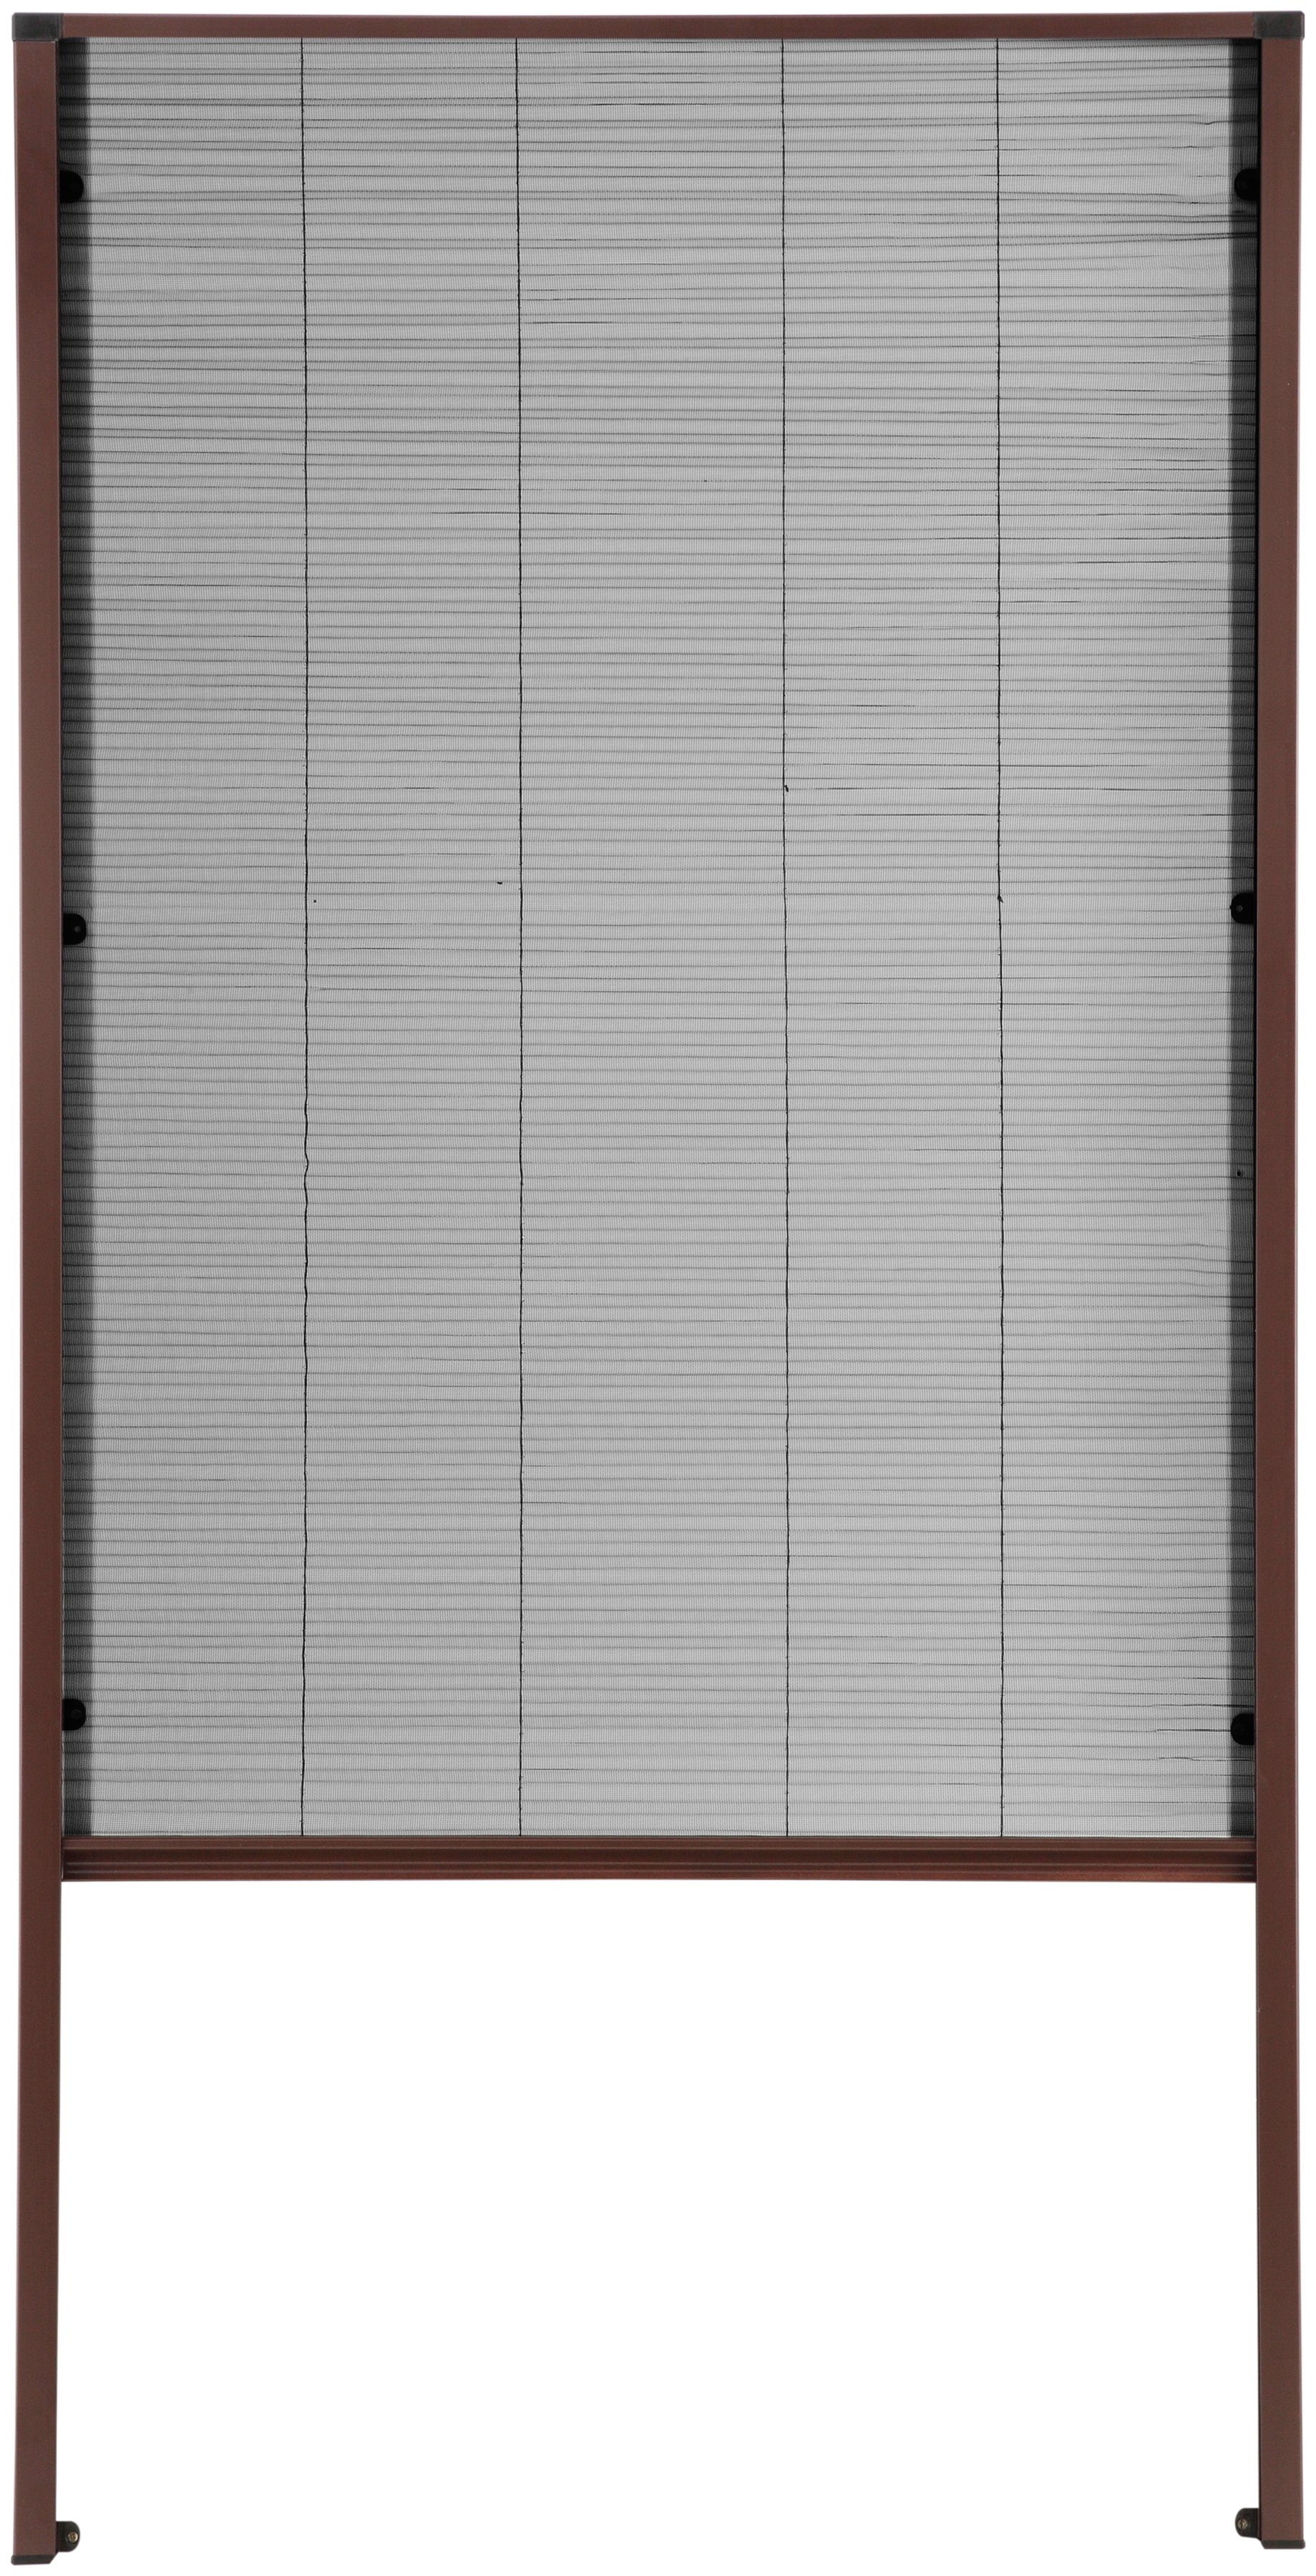 Insektenschutzrollo für Dachfenster, hecht international, transparent, verschraubt, braun/anthrazit, BxH: 80x160 cm